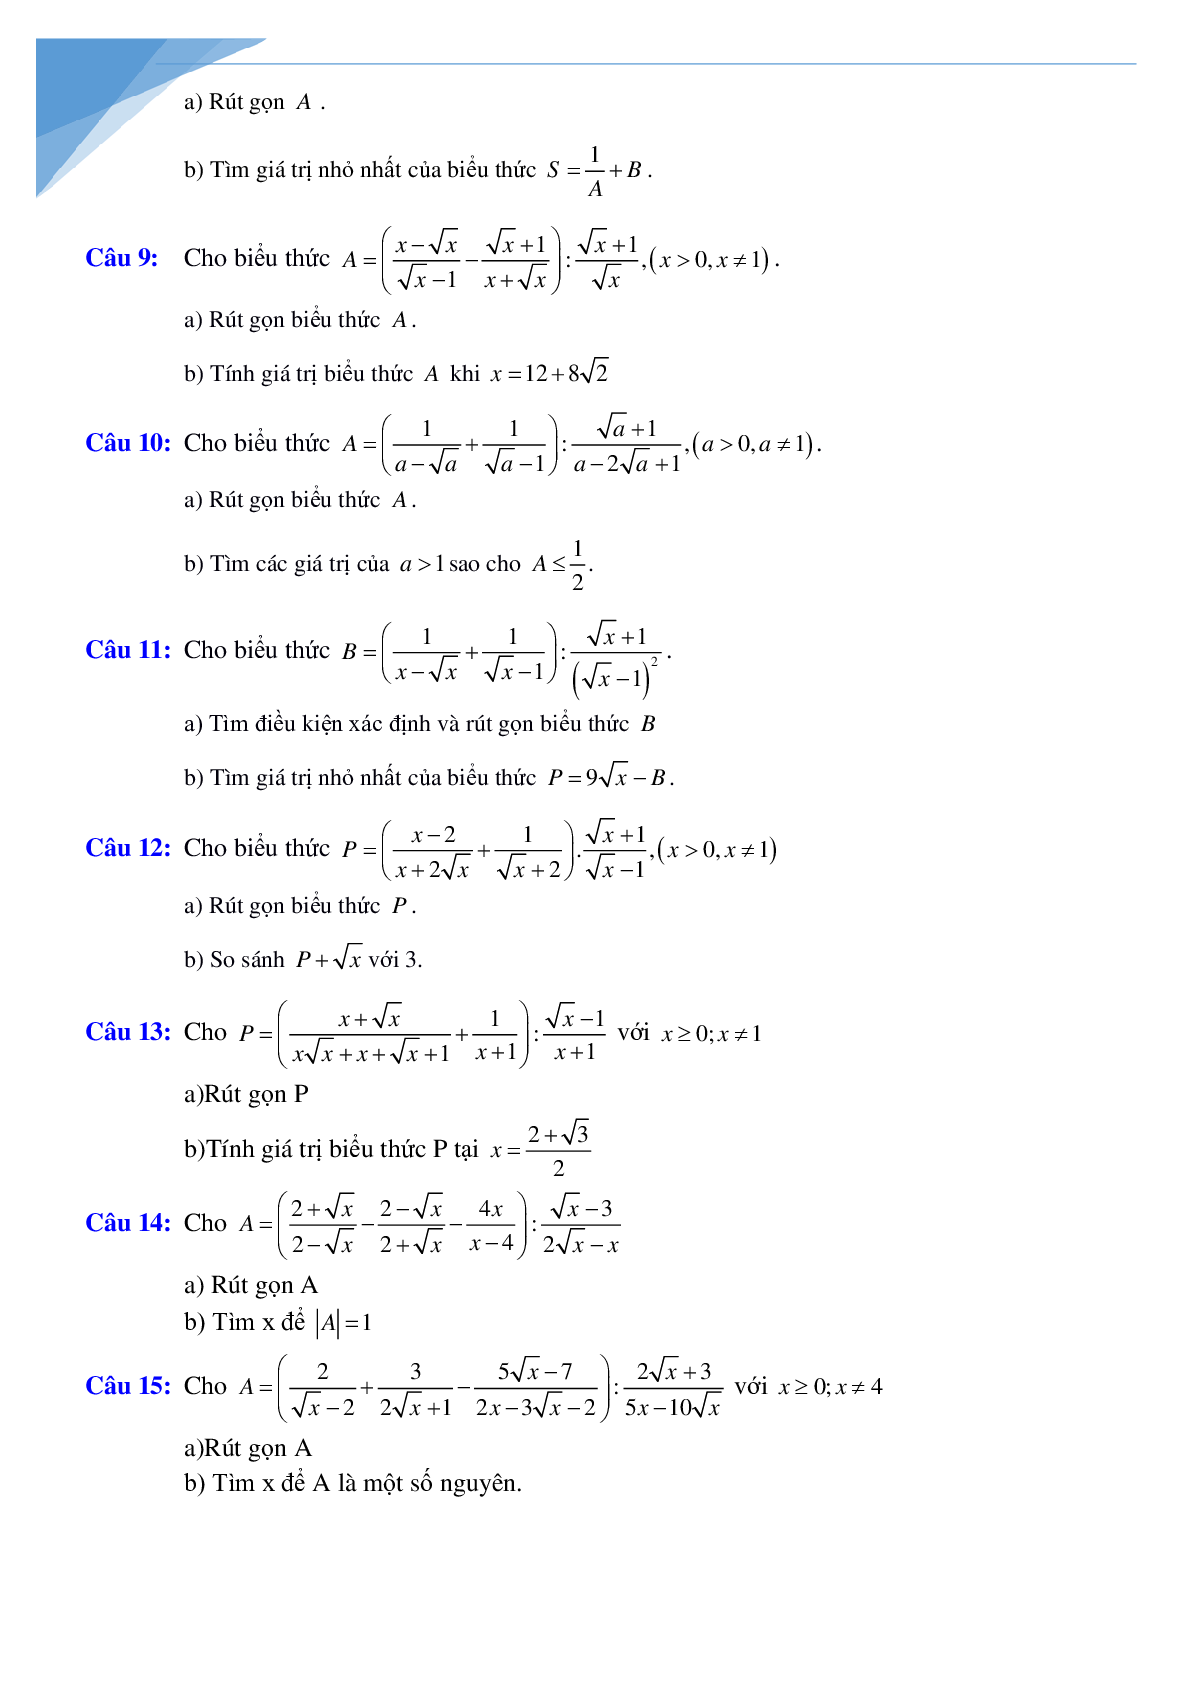 Rút gọn biểu thức và bài toán liên quan (trang 2)